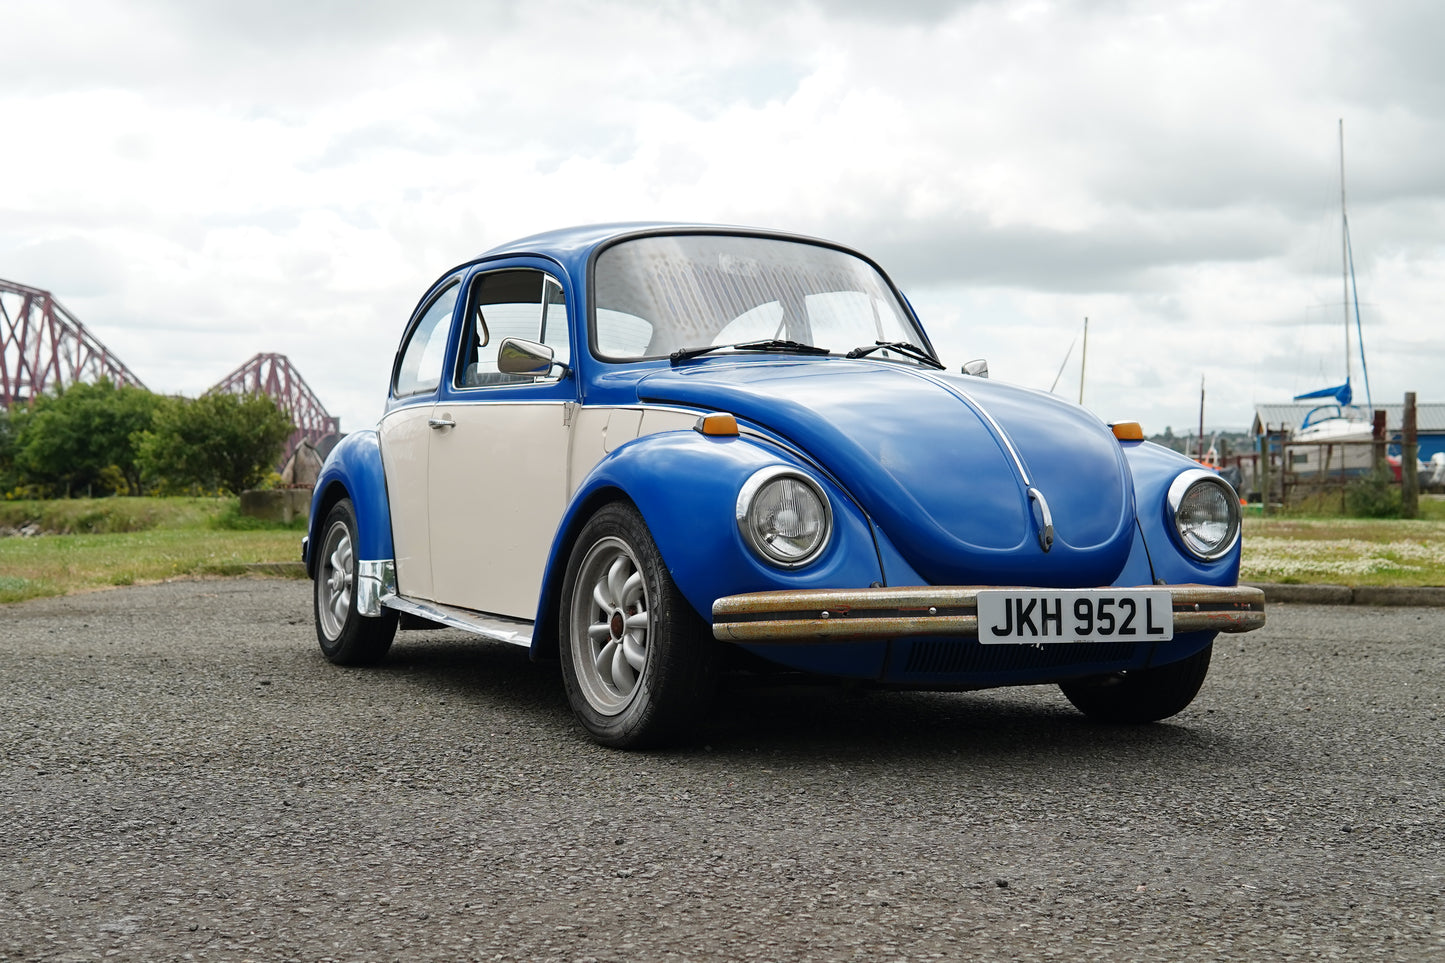 00 1973 Volkswagen Beetle 1303